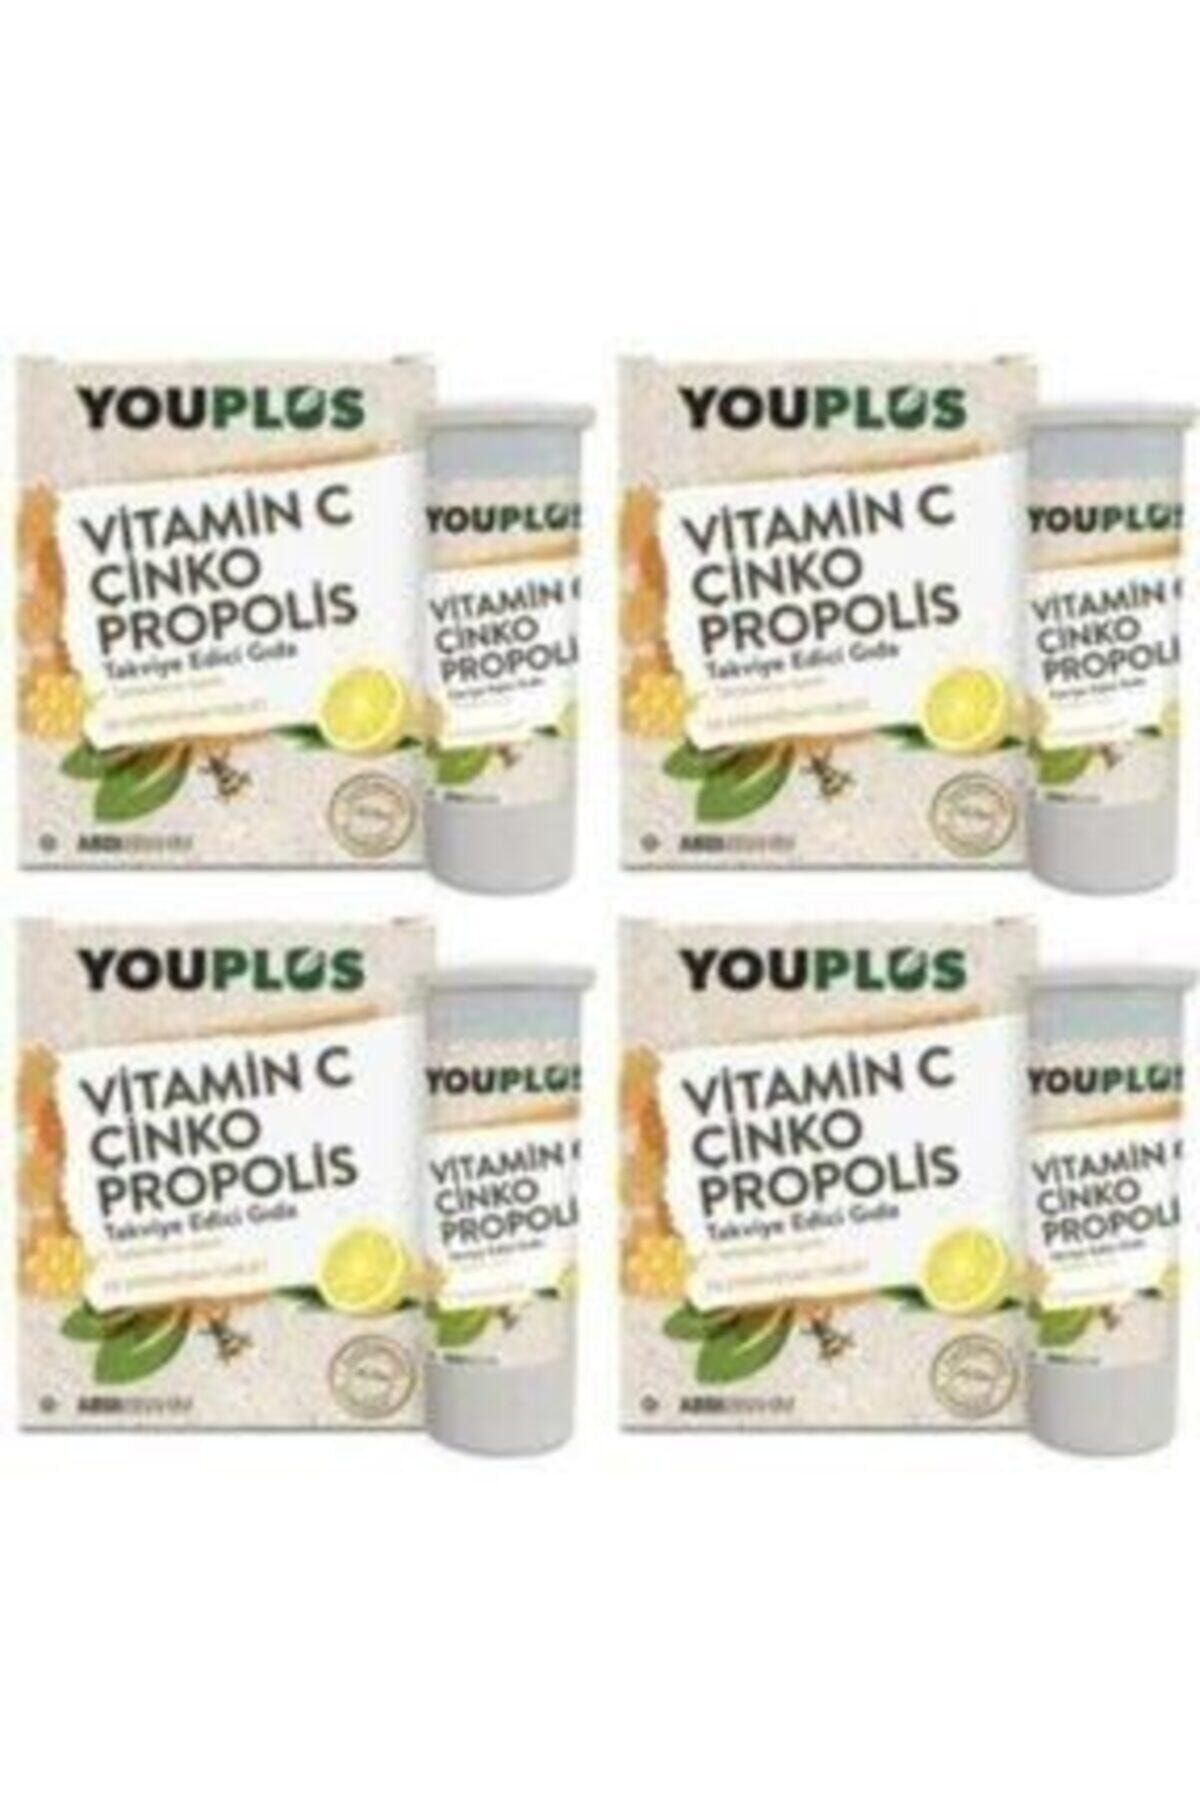 Youplus 4 Adet Youplus Vitamin C,çinko,propolis Efervesan Tablet Takviye